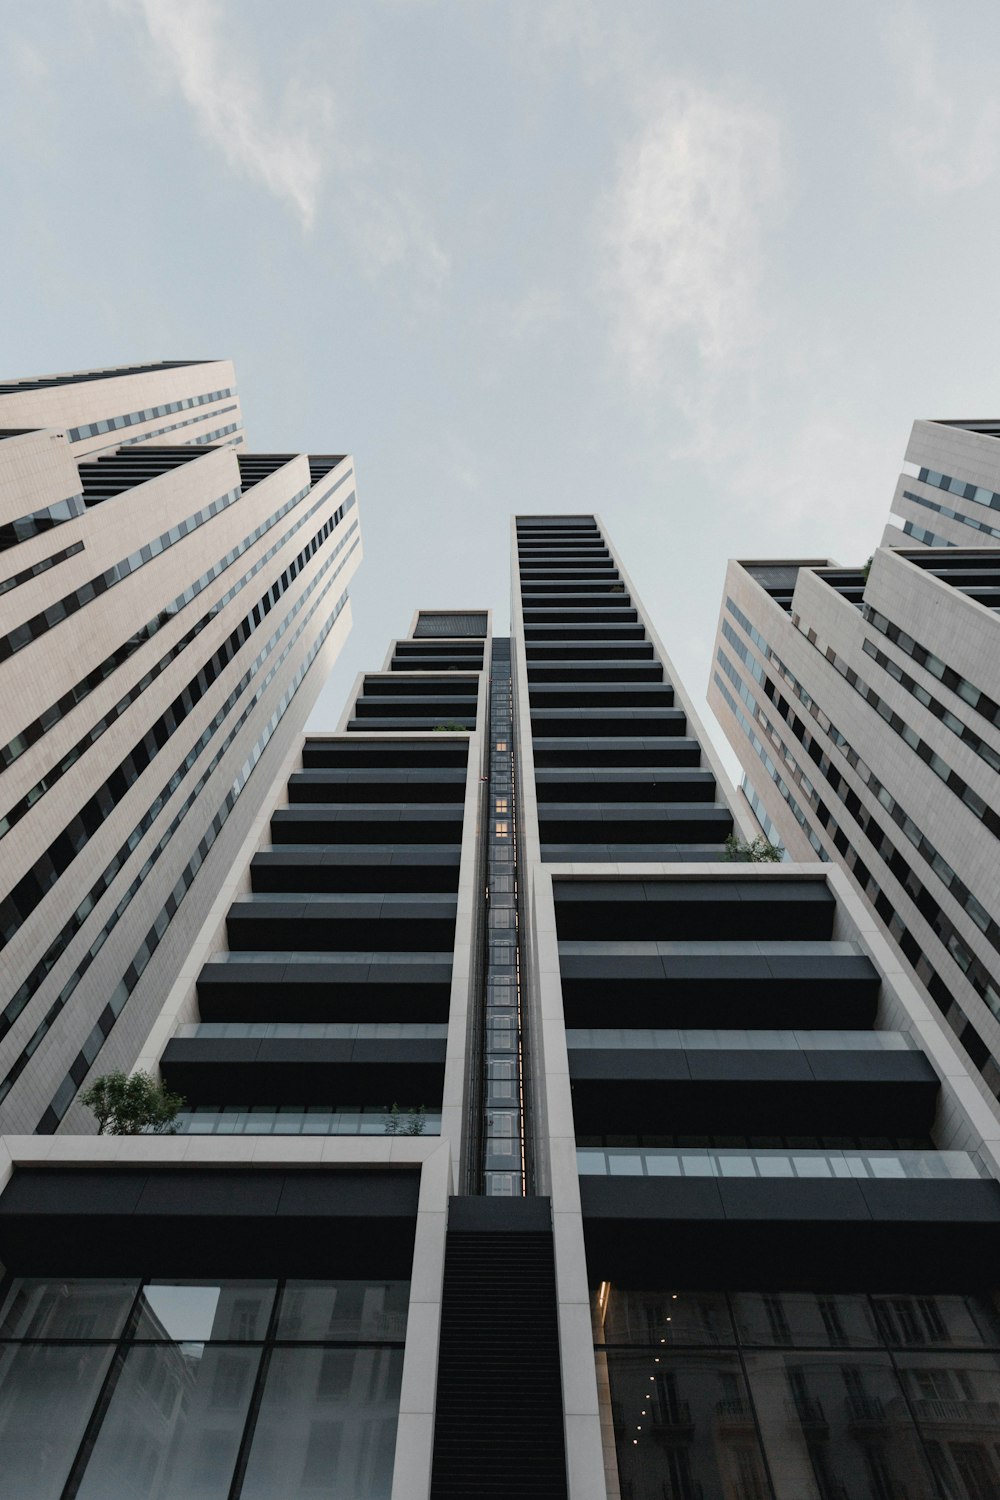 Fotografía de ángulo bajo de un edificio de gran altura pintado de negro